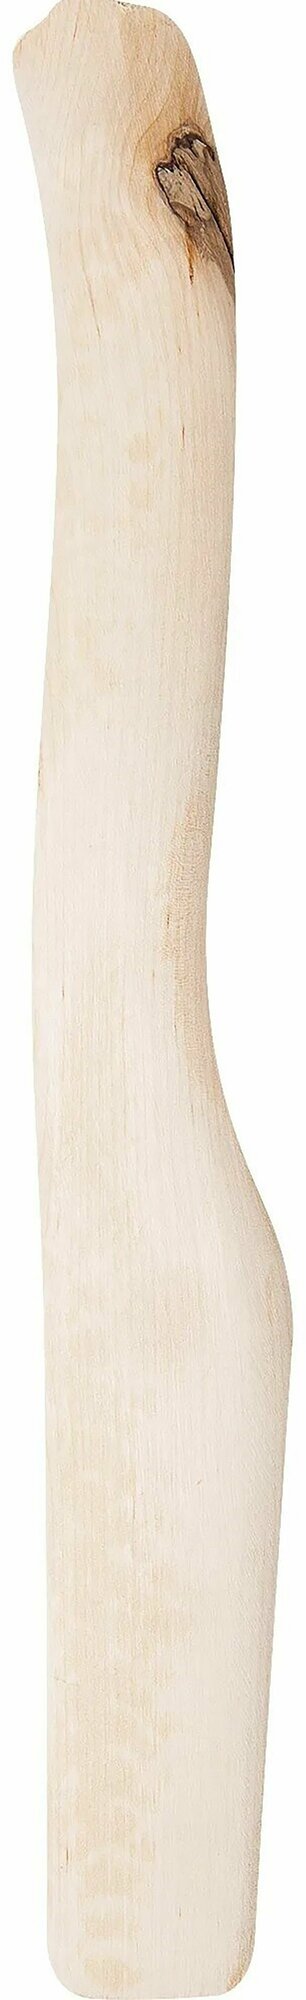 Топорище высший сорт большое 55 см деревянное шлифованное эргономичное и надежное поможет вам в столярно-плотницких работах и в заготовке дров для камина или печи